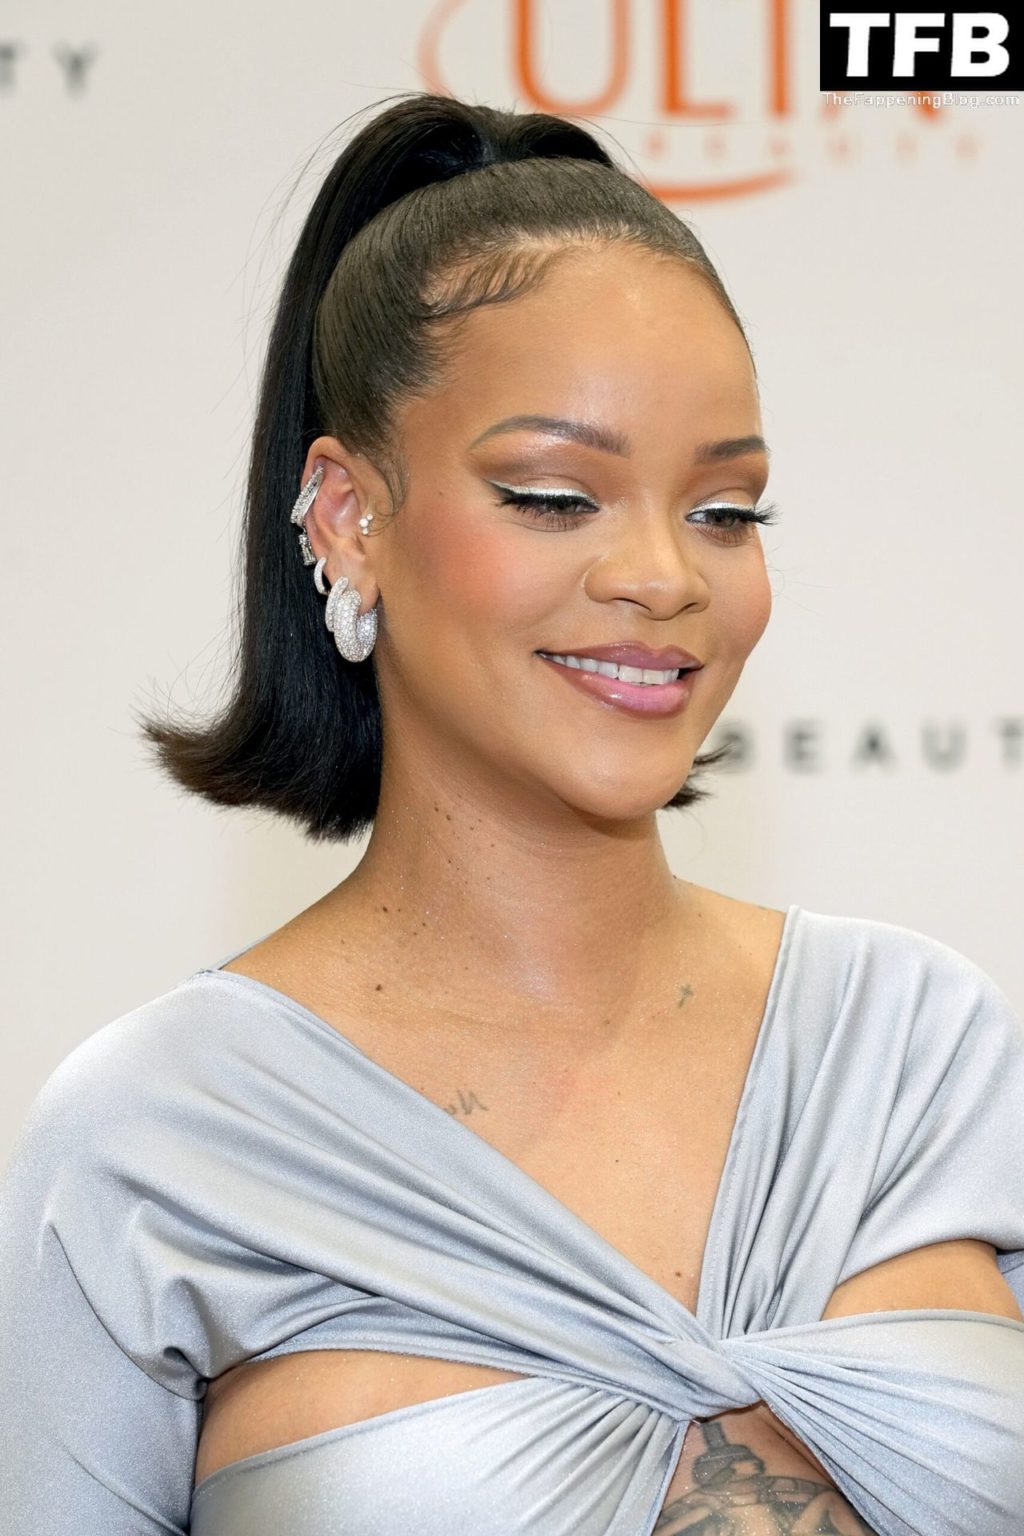 Rihanna Sexy The Fappening Blog 11 4 1024x1536 - Rihanna Celebrates the Launch of Fenty Beauty at Ulta Beauty (28 Photos)